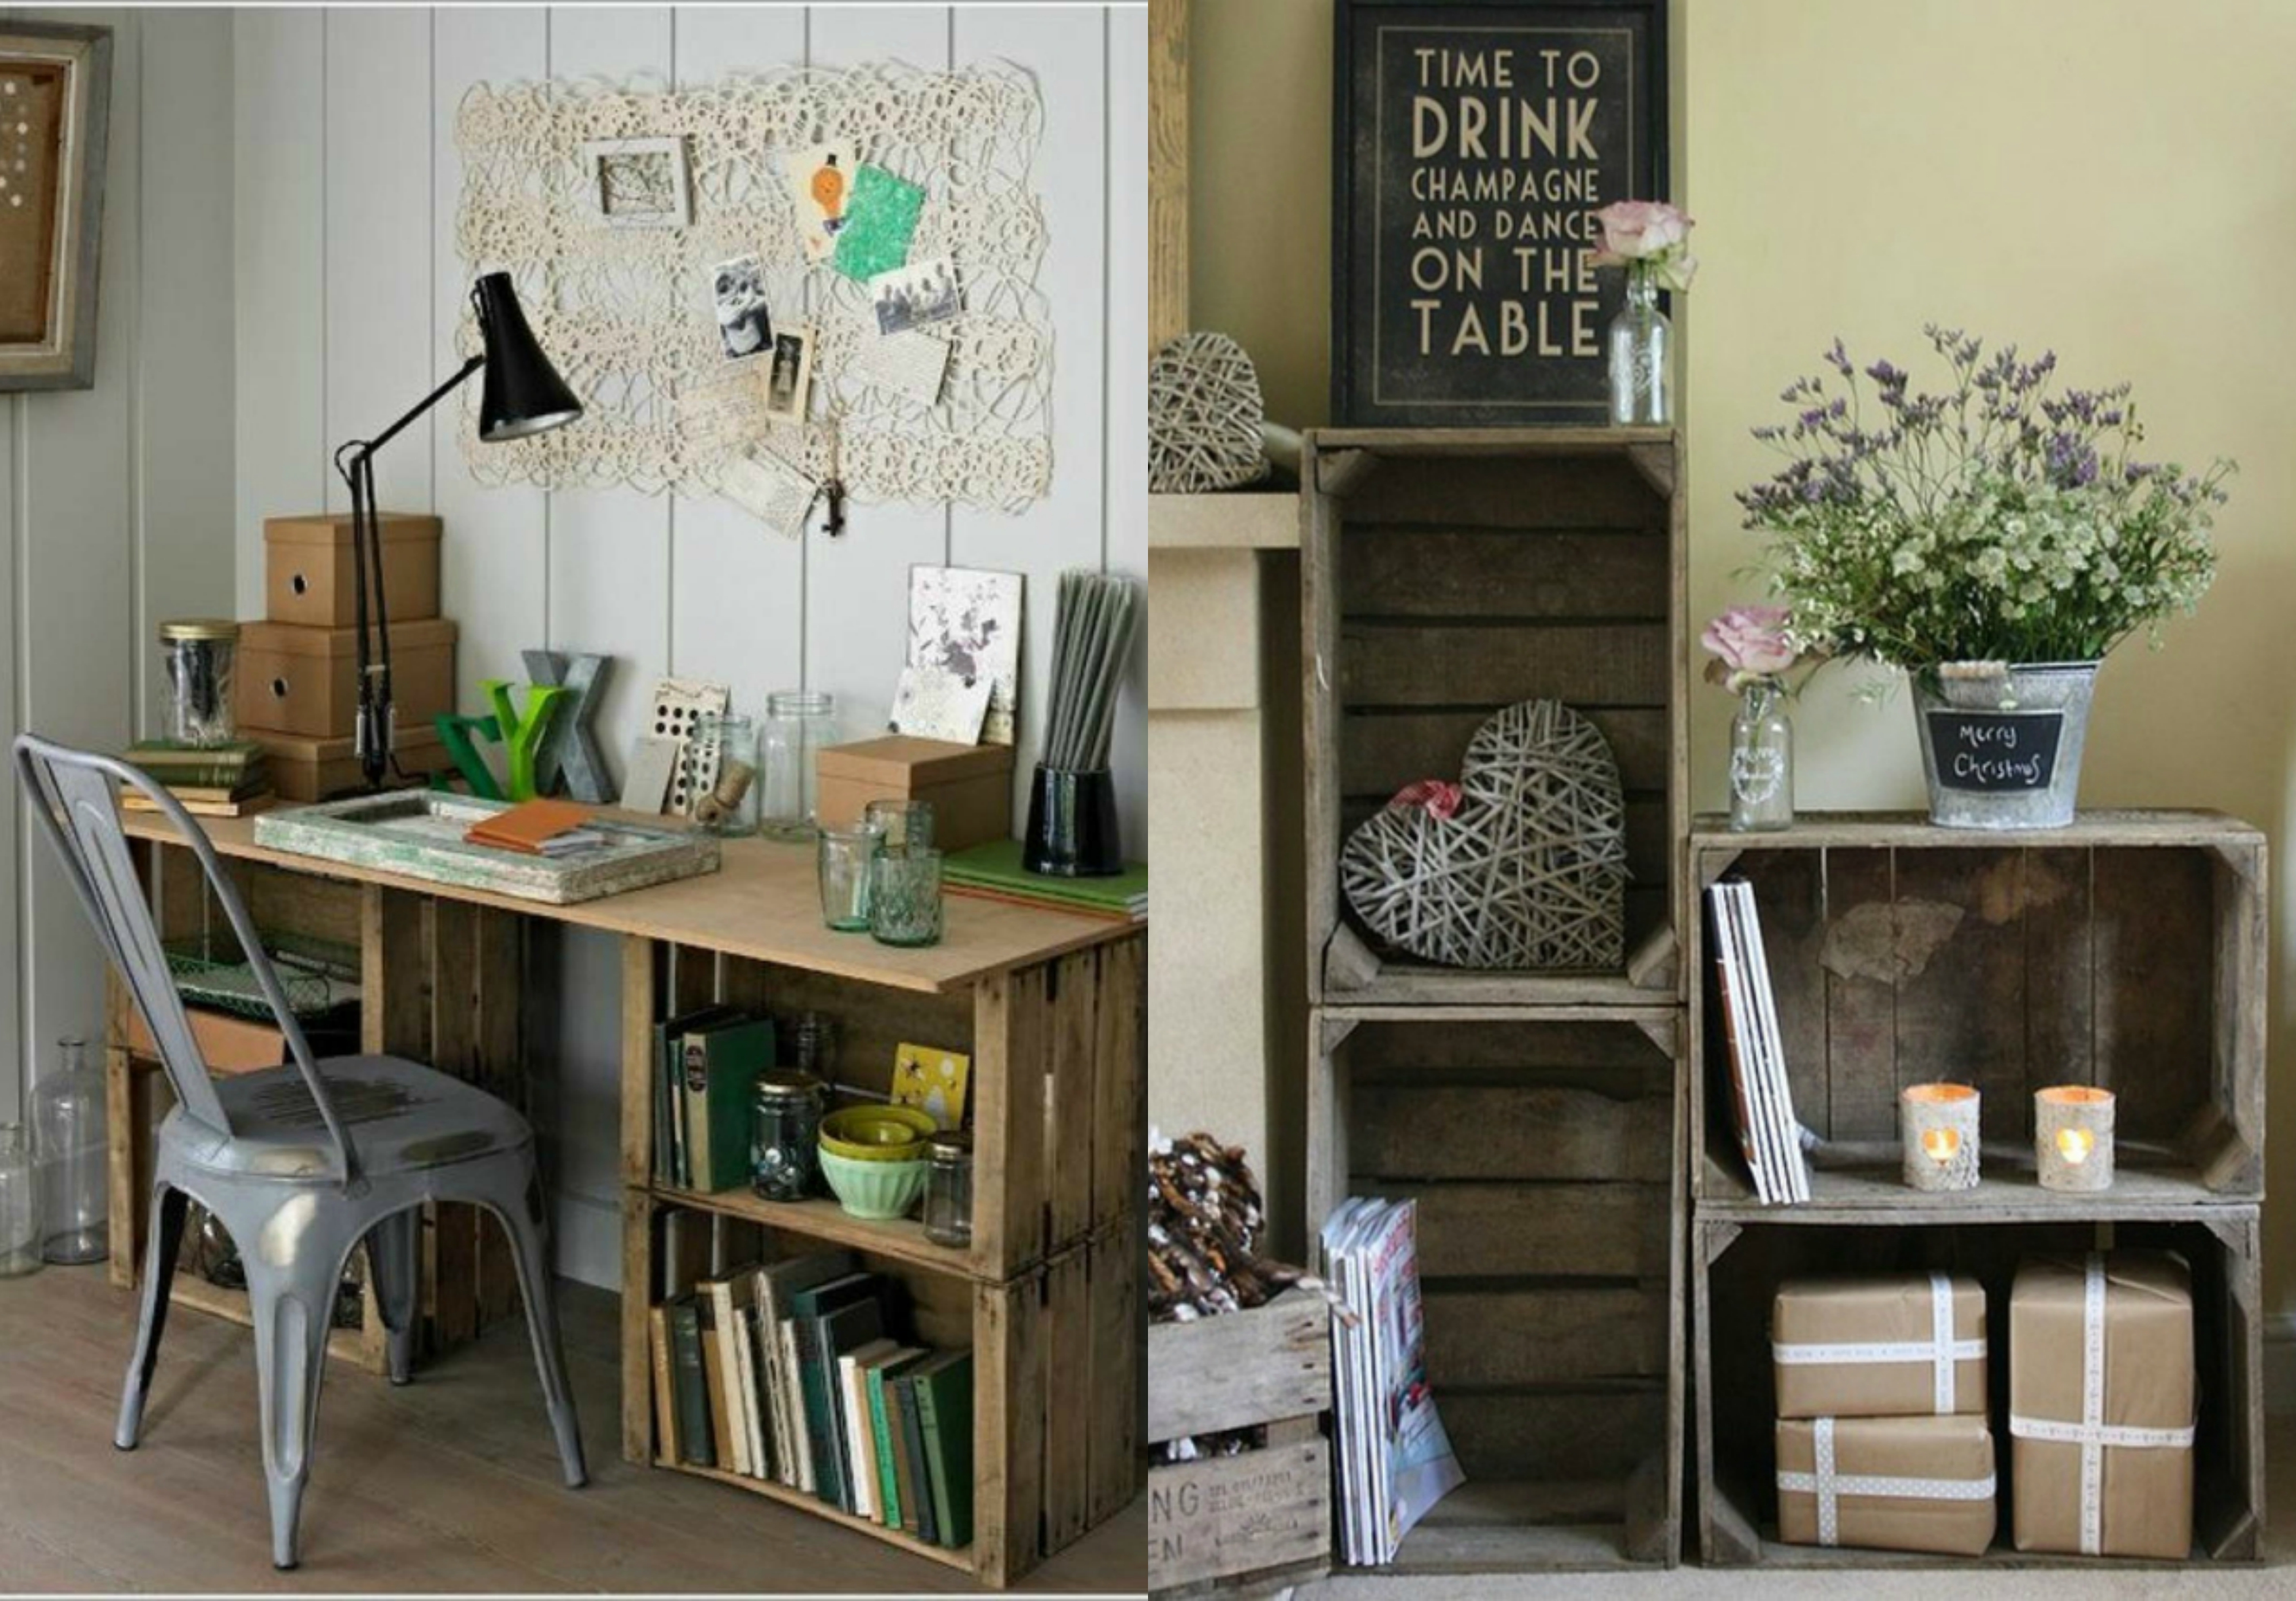 ejemplos de interiores en estilo vintage con muebles DIY hechos de cajas de fruta, decorar cajas de madera paso a paso 